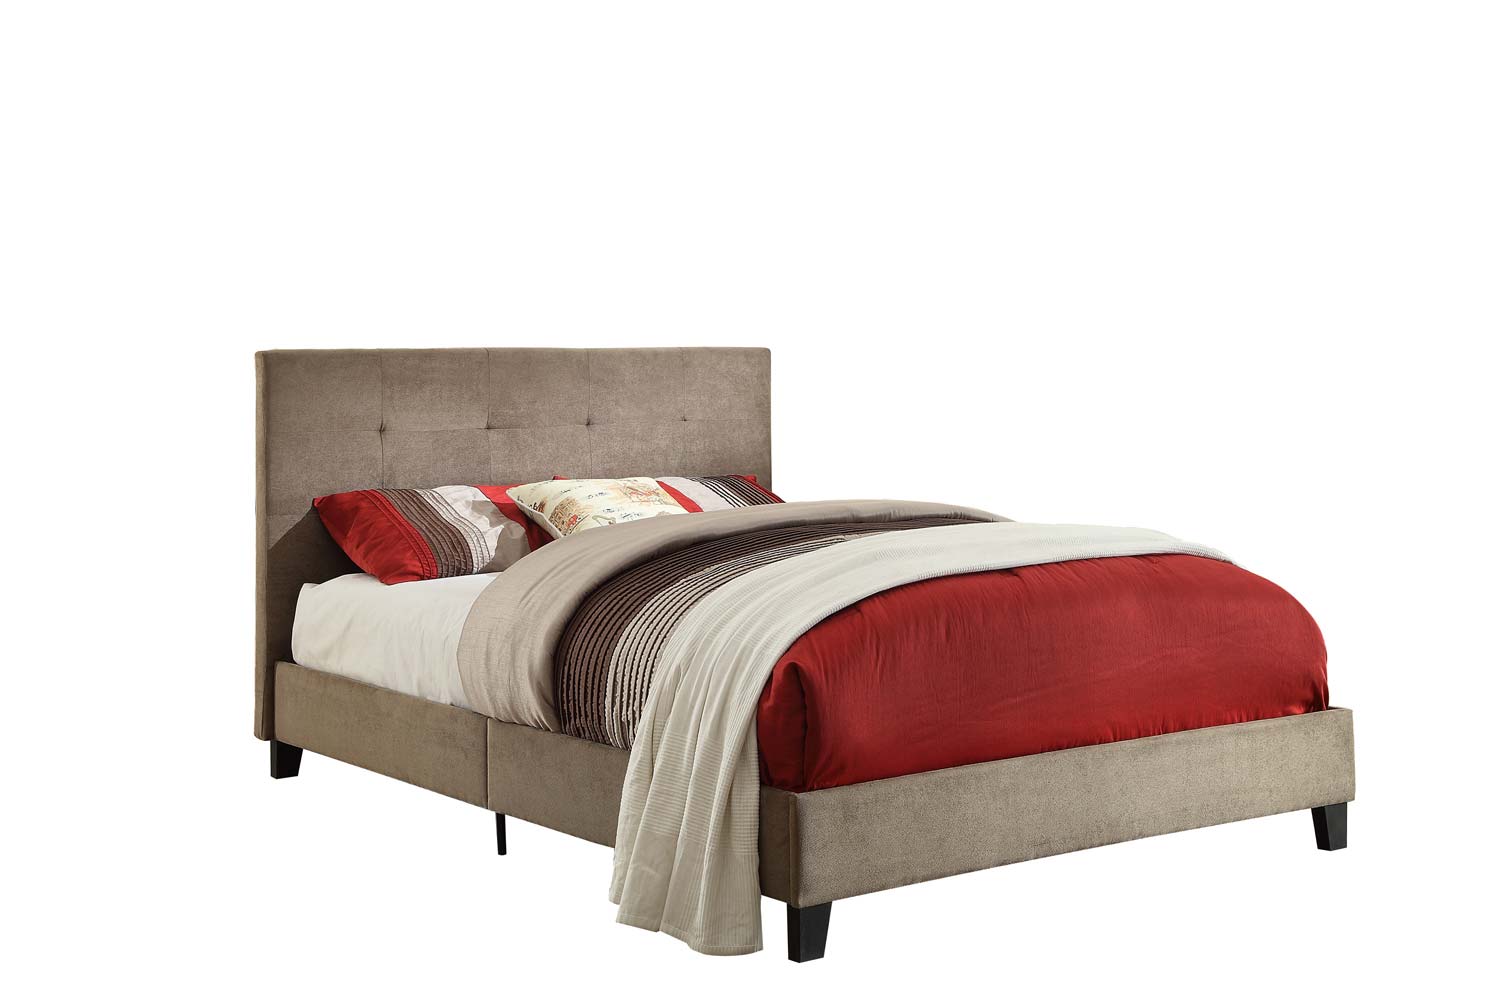 Homelegance Brice Upholstered Platform Bed - Brown